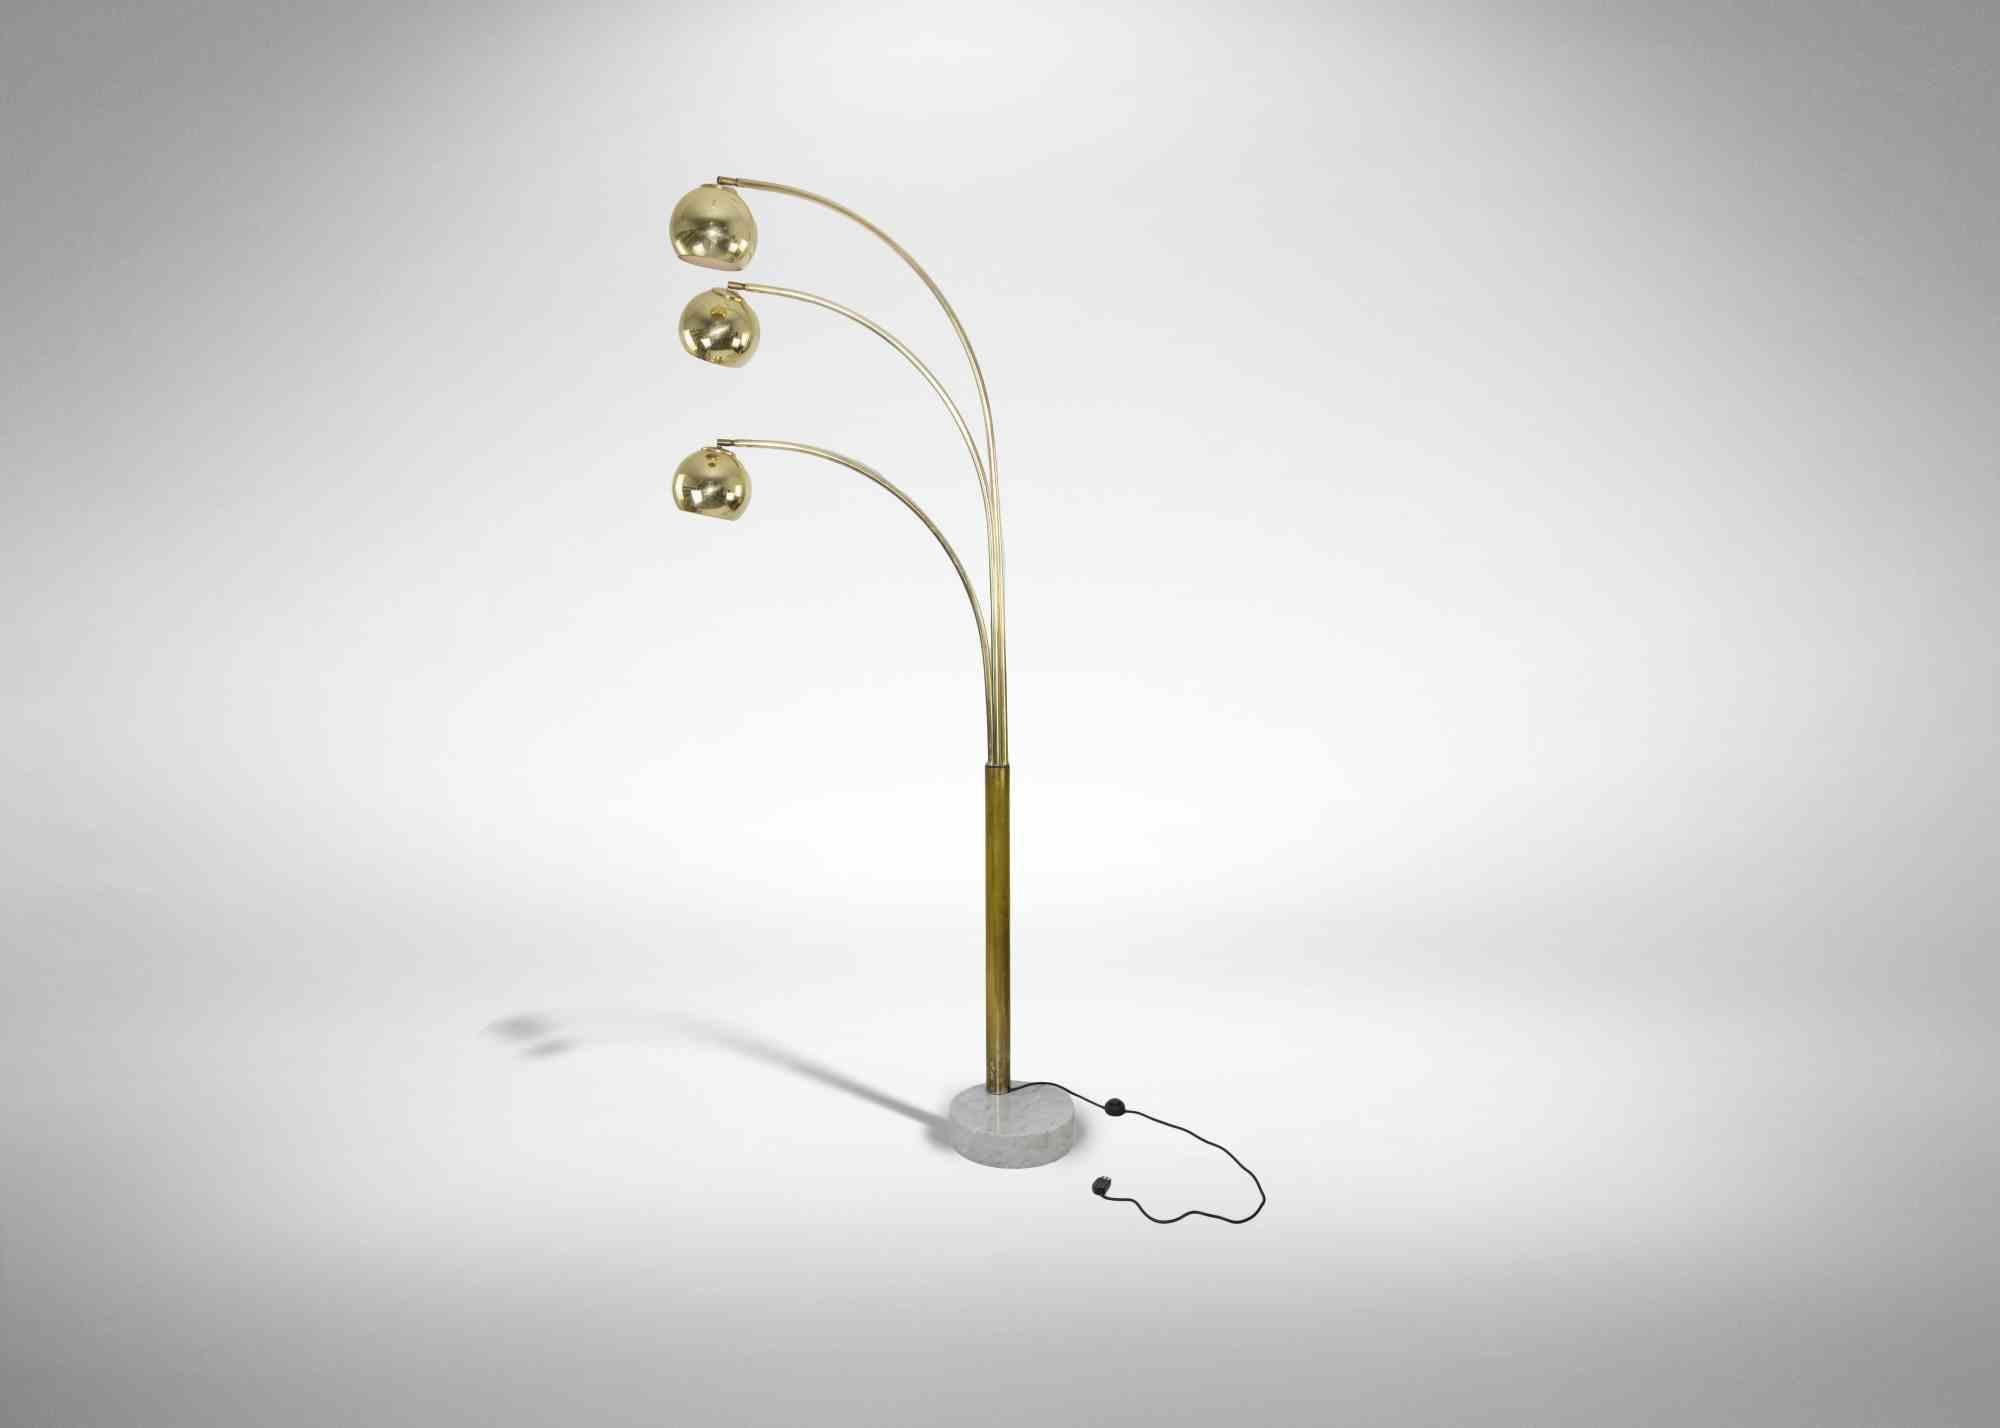 Vintage Stehlampe realisiert von Goffredo Reggiani, Italien, in den 1970er Jahren.

Vergoldete Chromlampe mit Marmorsockel.